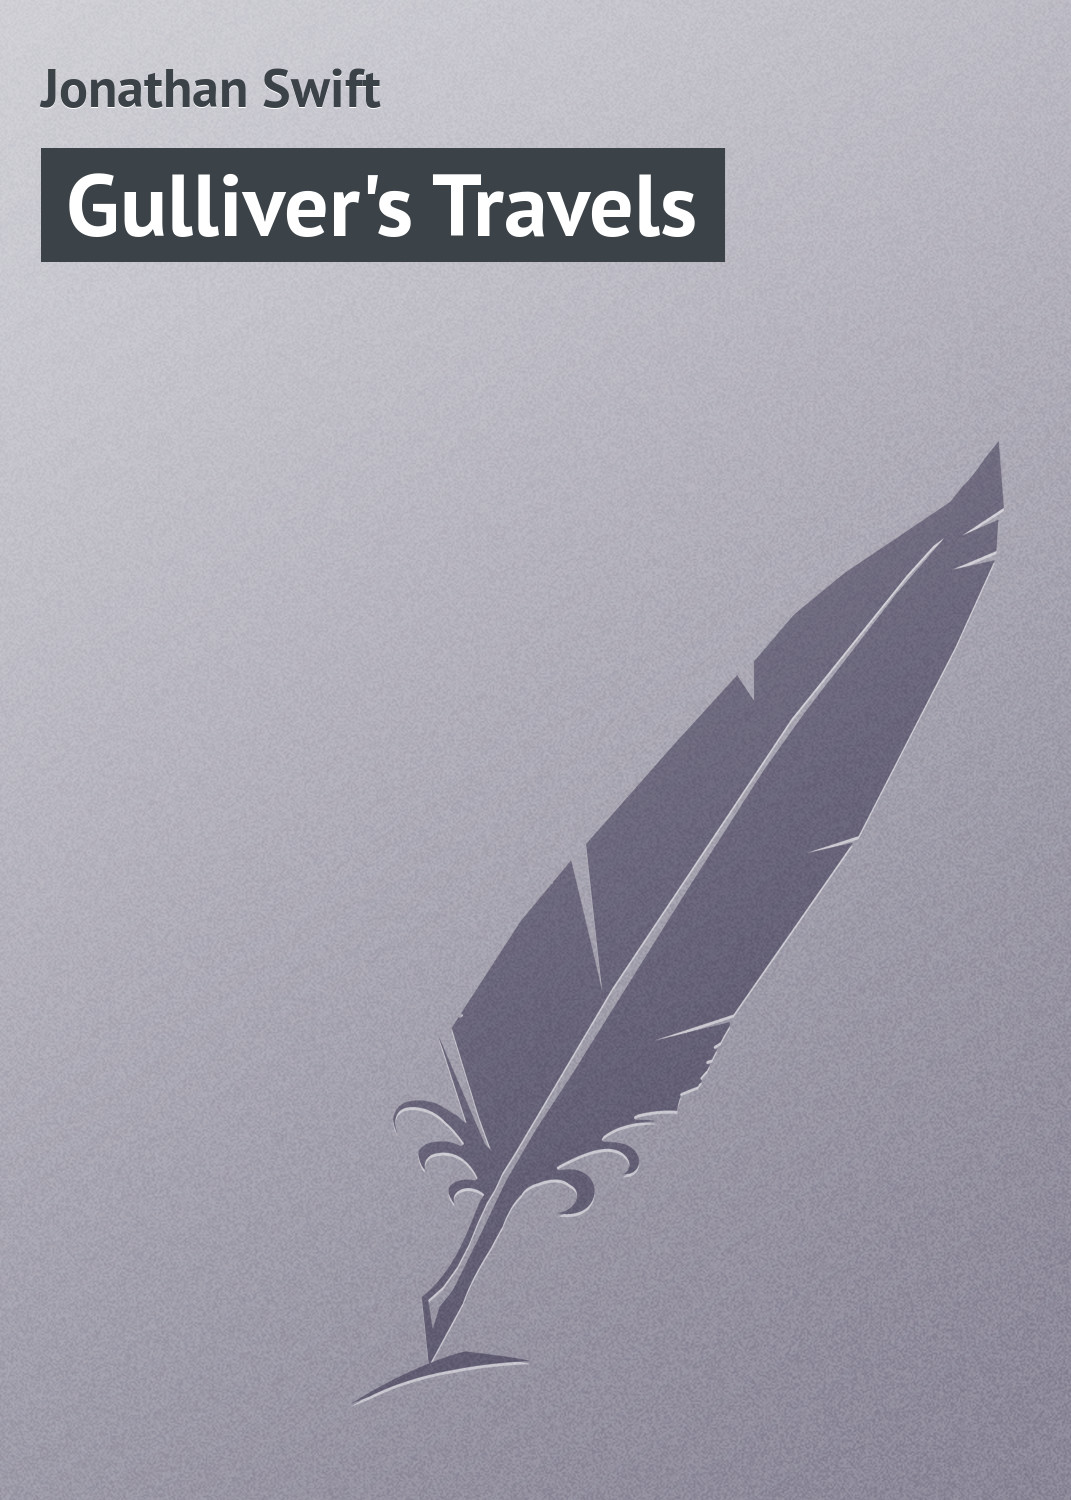 Книга Gulliver's Travels из серии , созданная Jonathan Swift, может относится к жанру Зарубежная старинная литература, Зарубежная классика. Стоимость электронной книги Gulliver's Travels с идентификатором 21103350 составляет 5.99 руб.